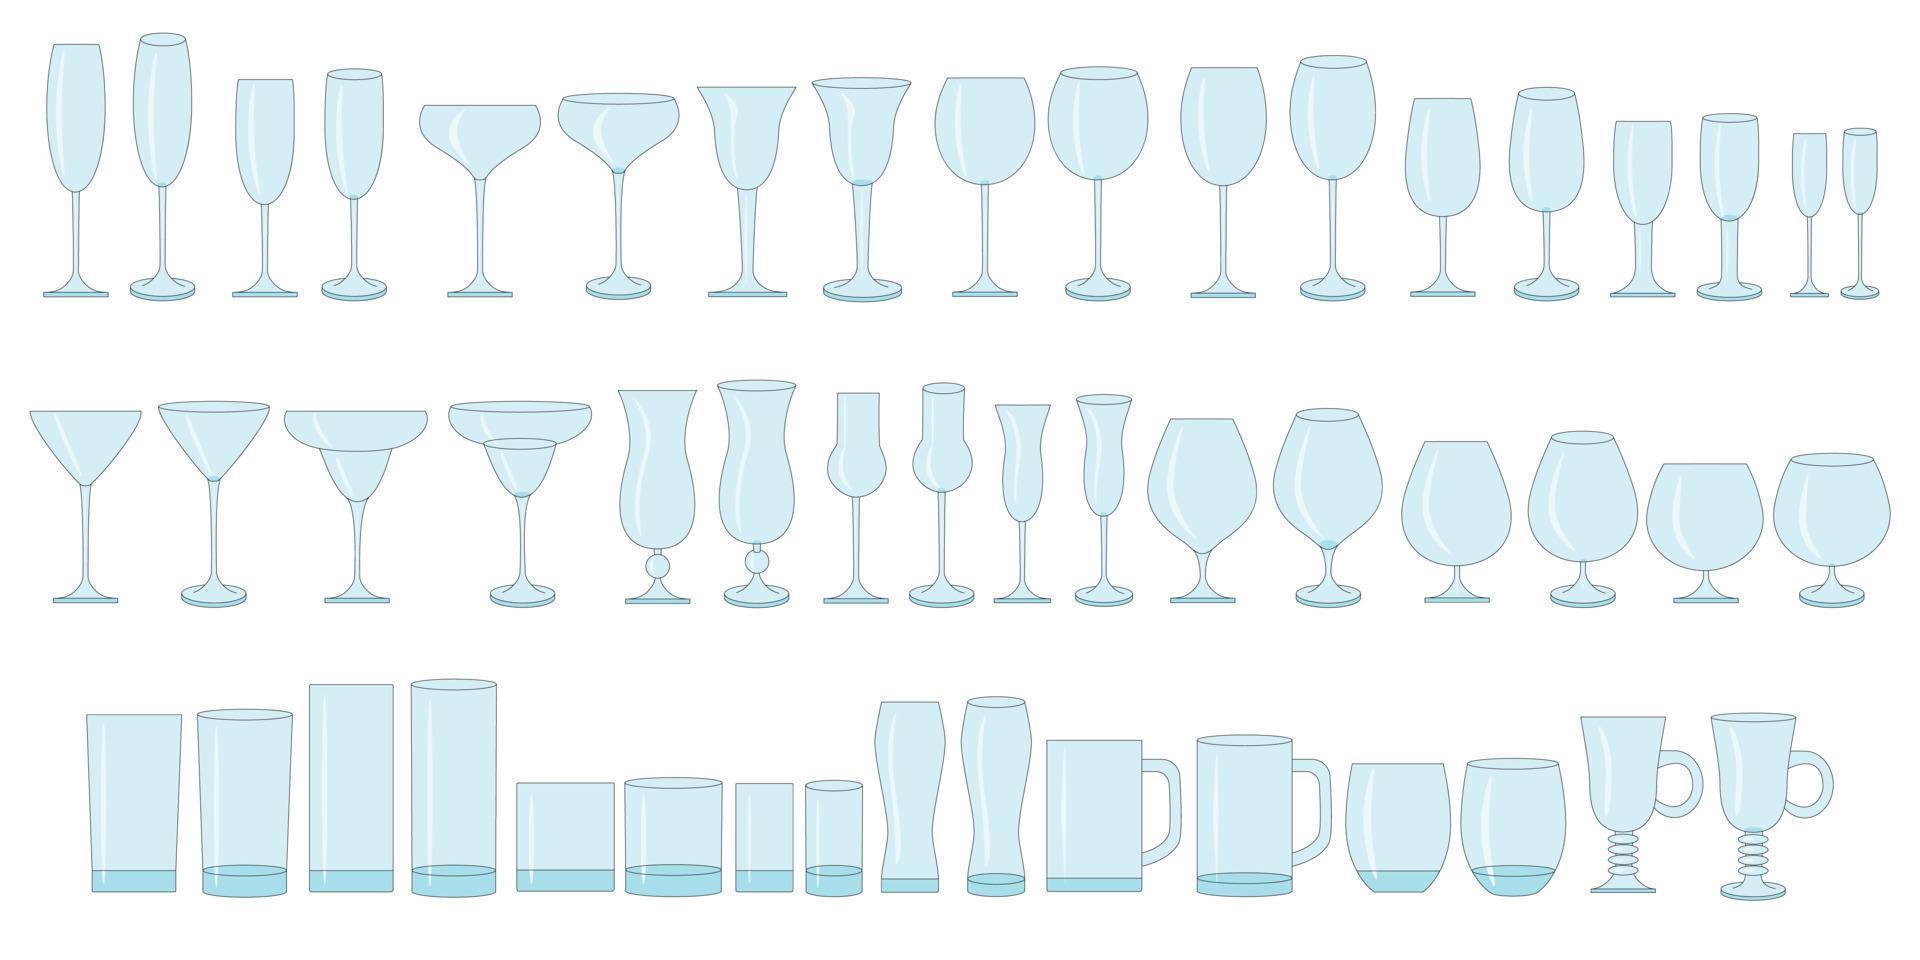 verres de couleur pour vin, champagne, whisky, cognac. types de verres pour boissons alcoolisées et non alcoolisées. vecteur